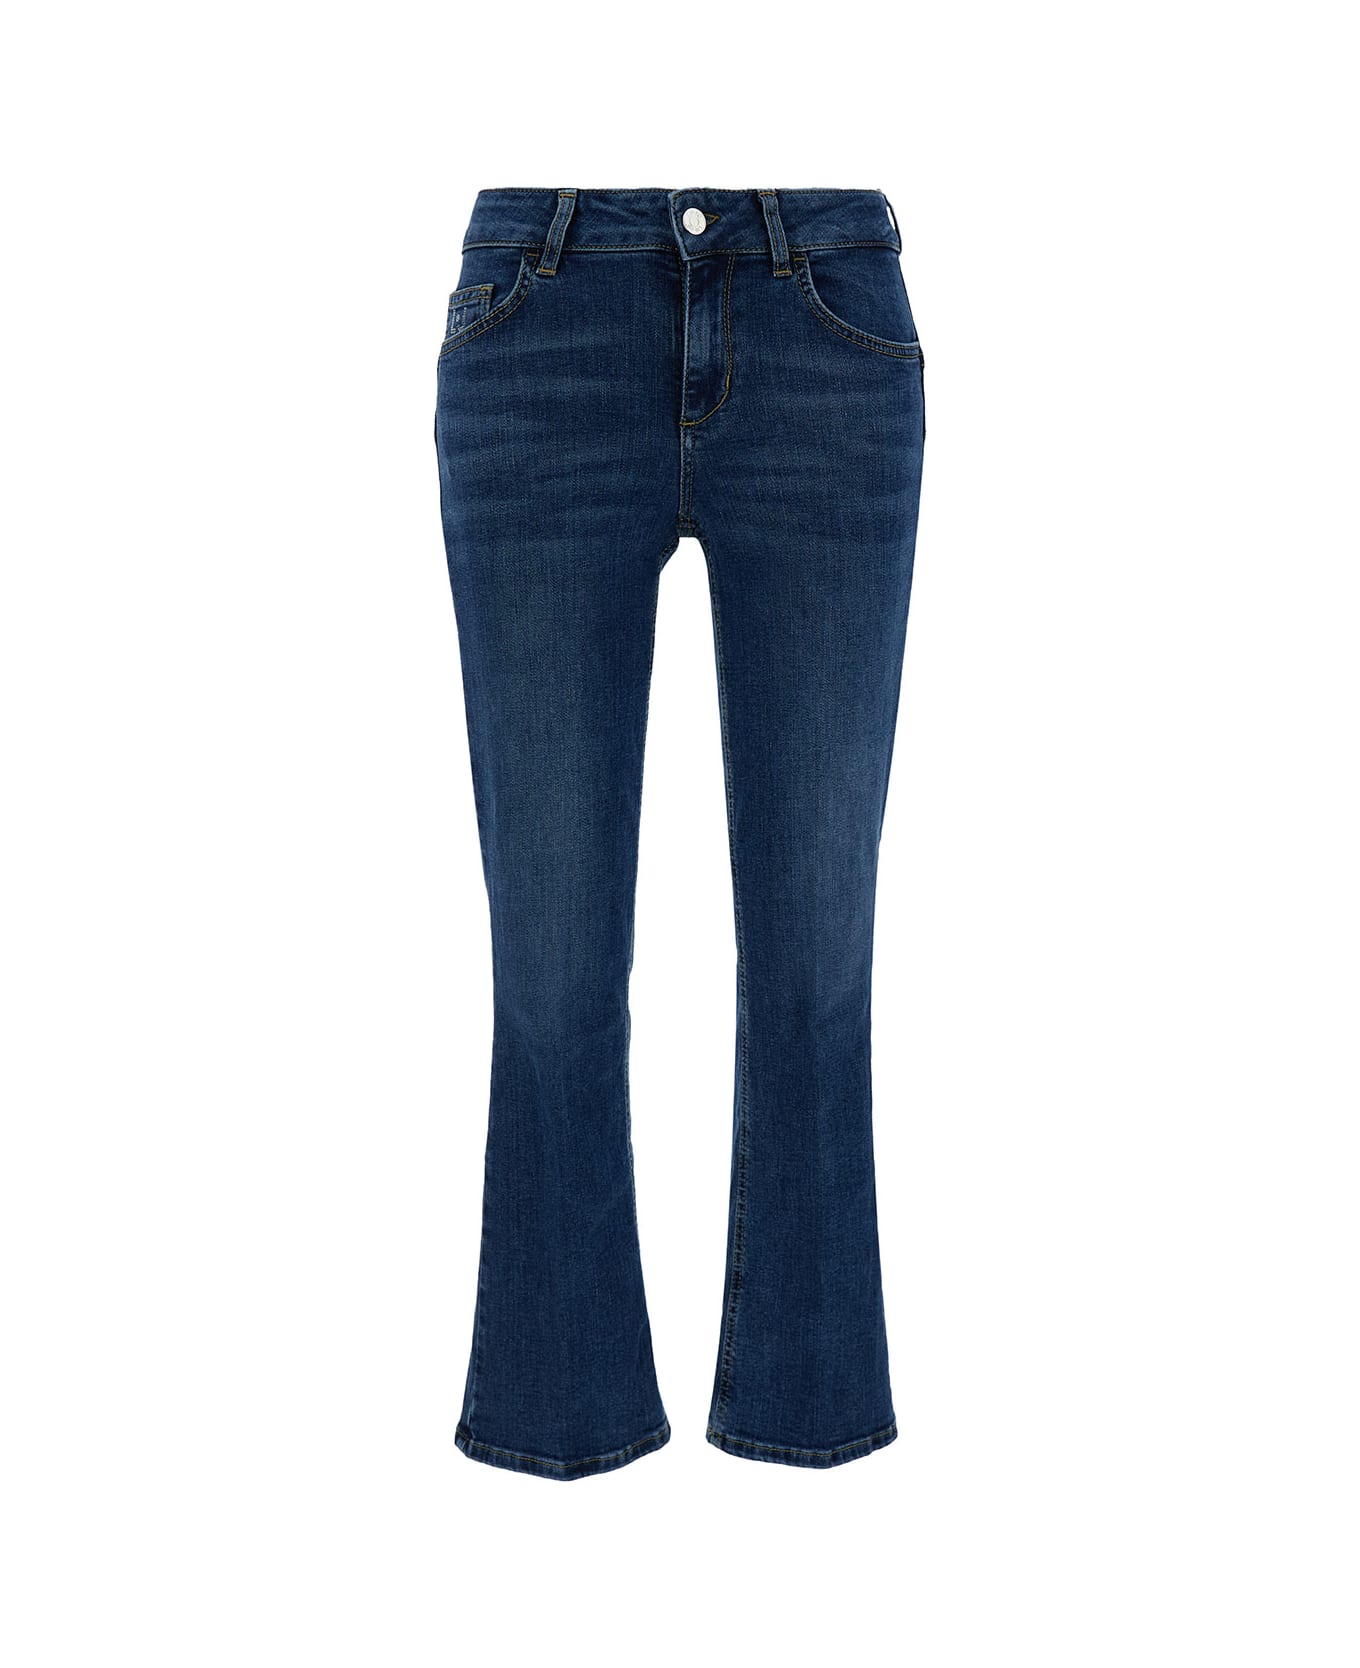 Liu-Jo Blue Slightly Flared Five Pocket Jeans In Cotton Denim Woman - Blu デニム